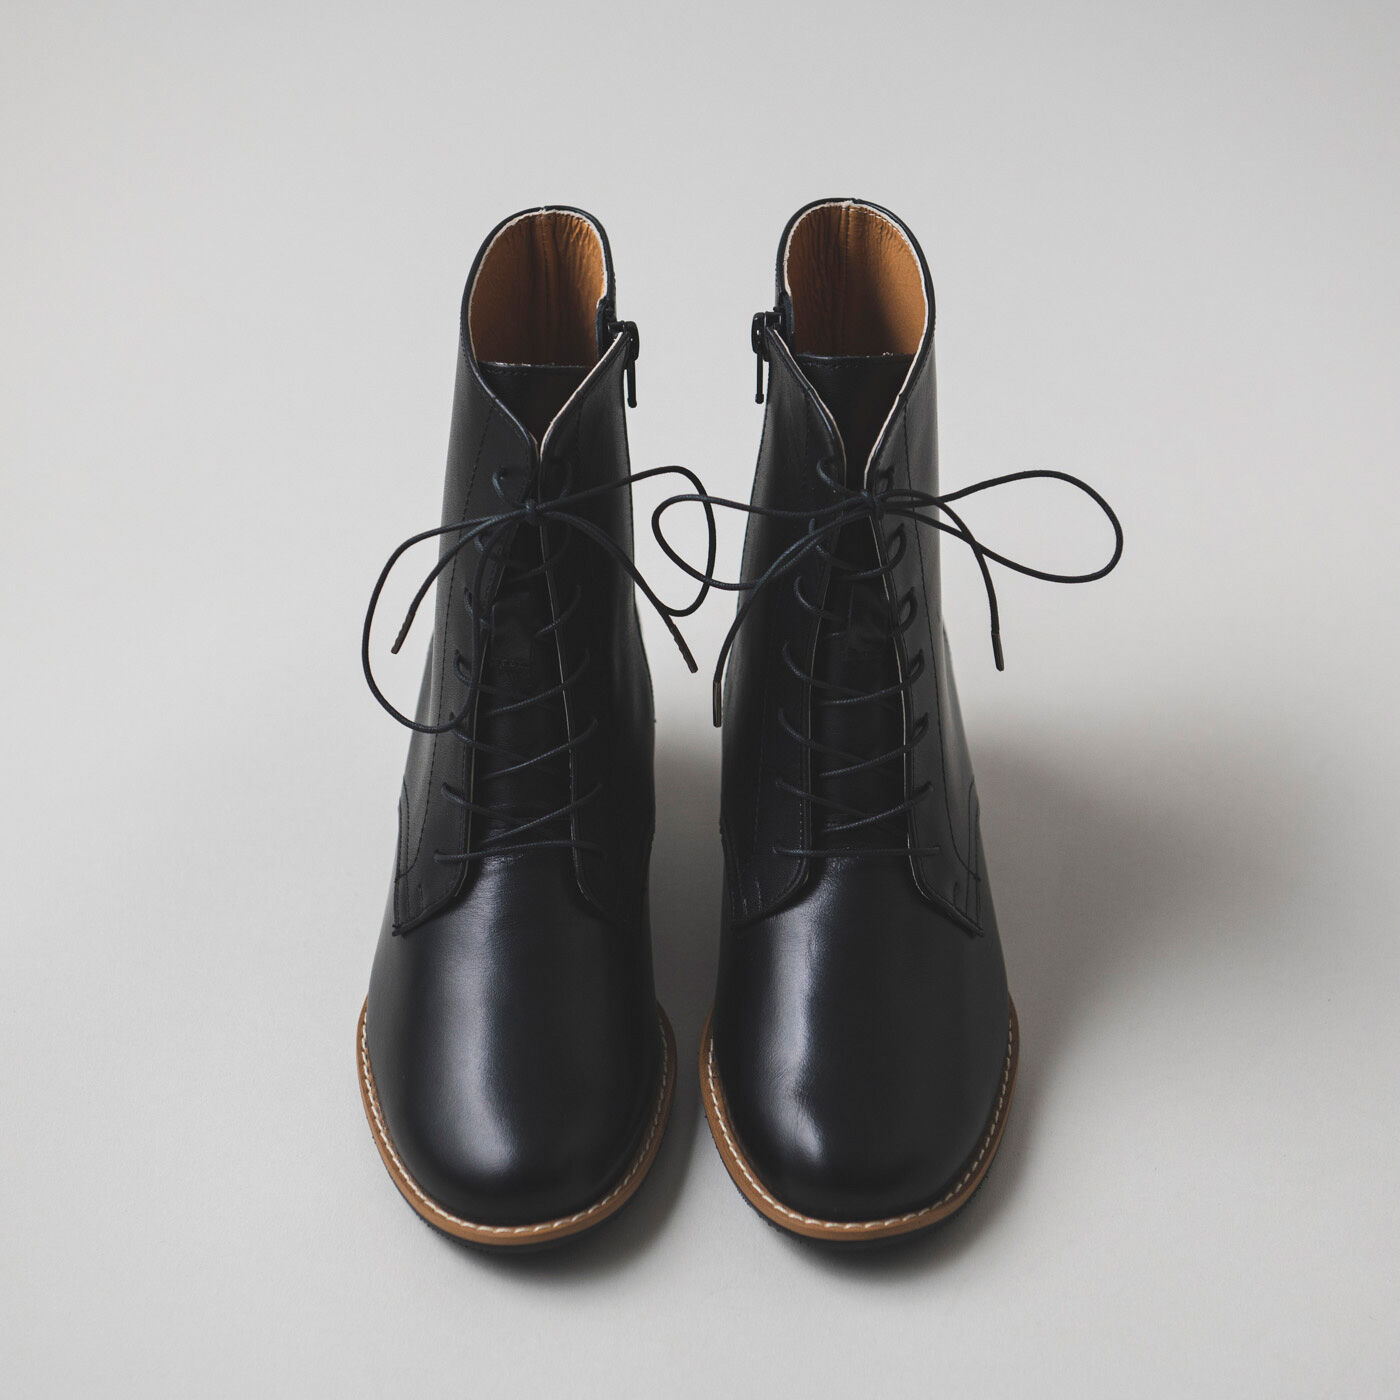 ＆Stories|長田の靴職人が作った 職人本革の凜とした編み上げブーツ〈ブラック〉|甲高・幅広の足もすっぽり包み込むやさしい履き心地に、クッション性のあるソールで歩きやすさもばっちり。